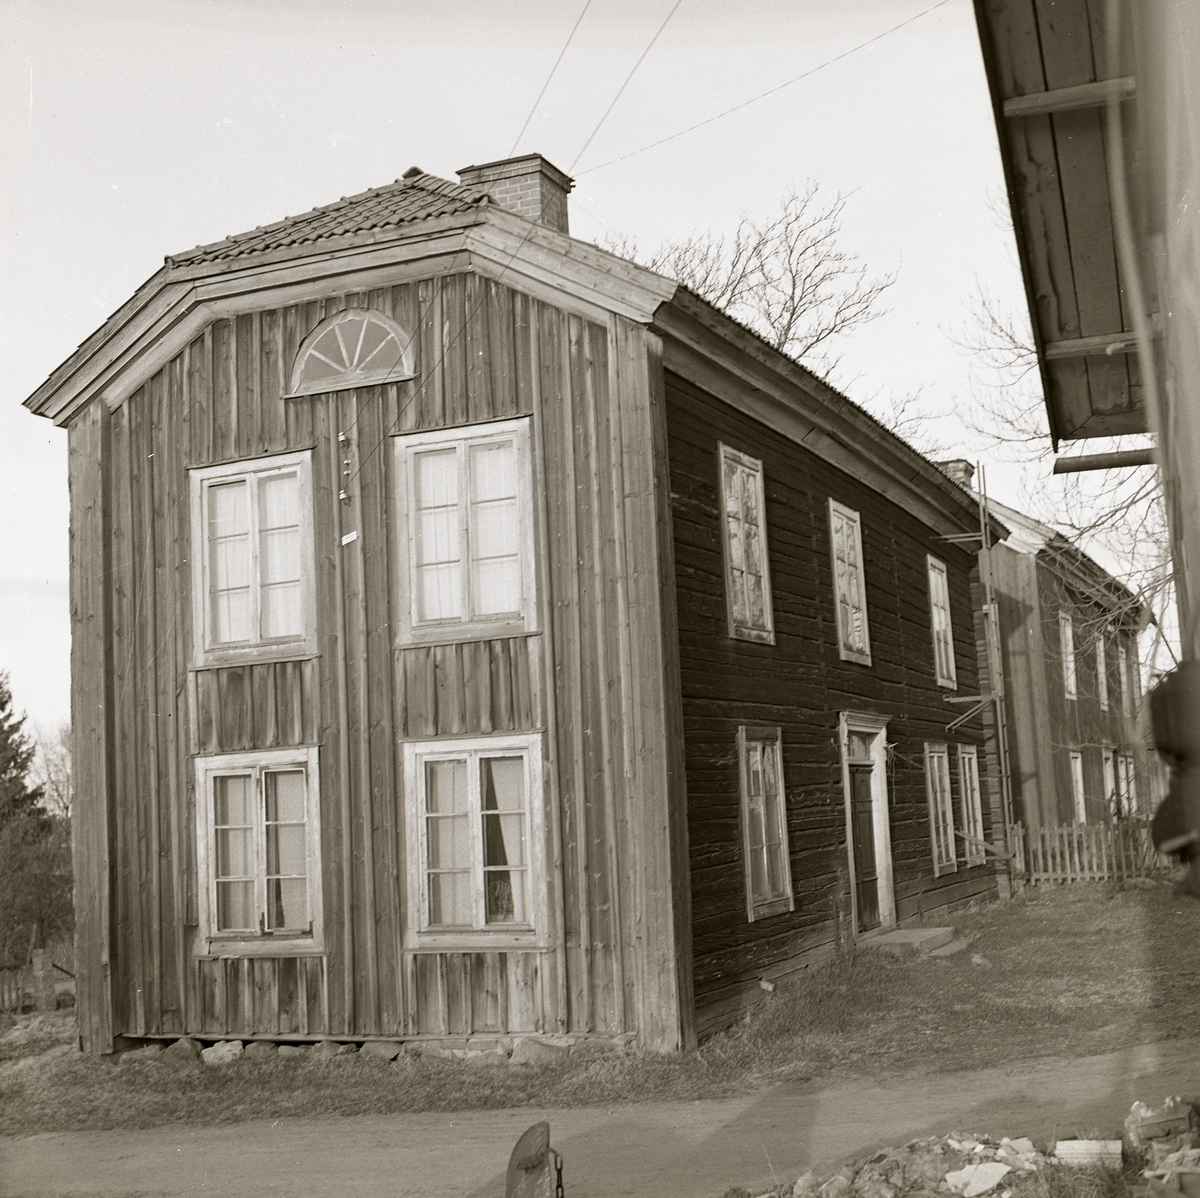 En gammal hälsingegård, Söderala 1973. Timmerhus där gaveln är klädd med träpanel. Valmat tak med tegel. Fönster med spröjs och sex rutor och längst upp ett halvmånefönster.